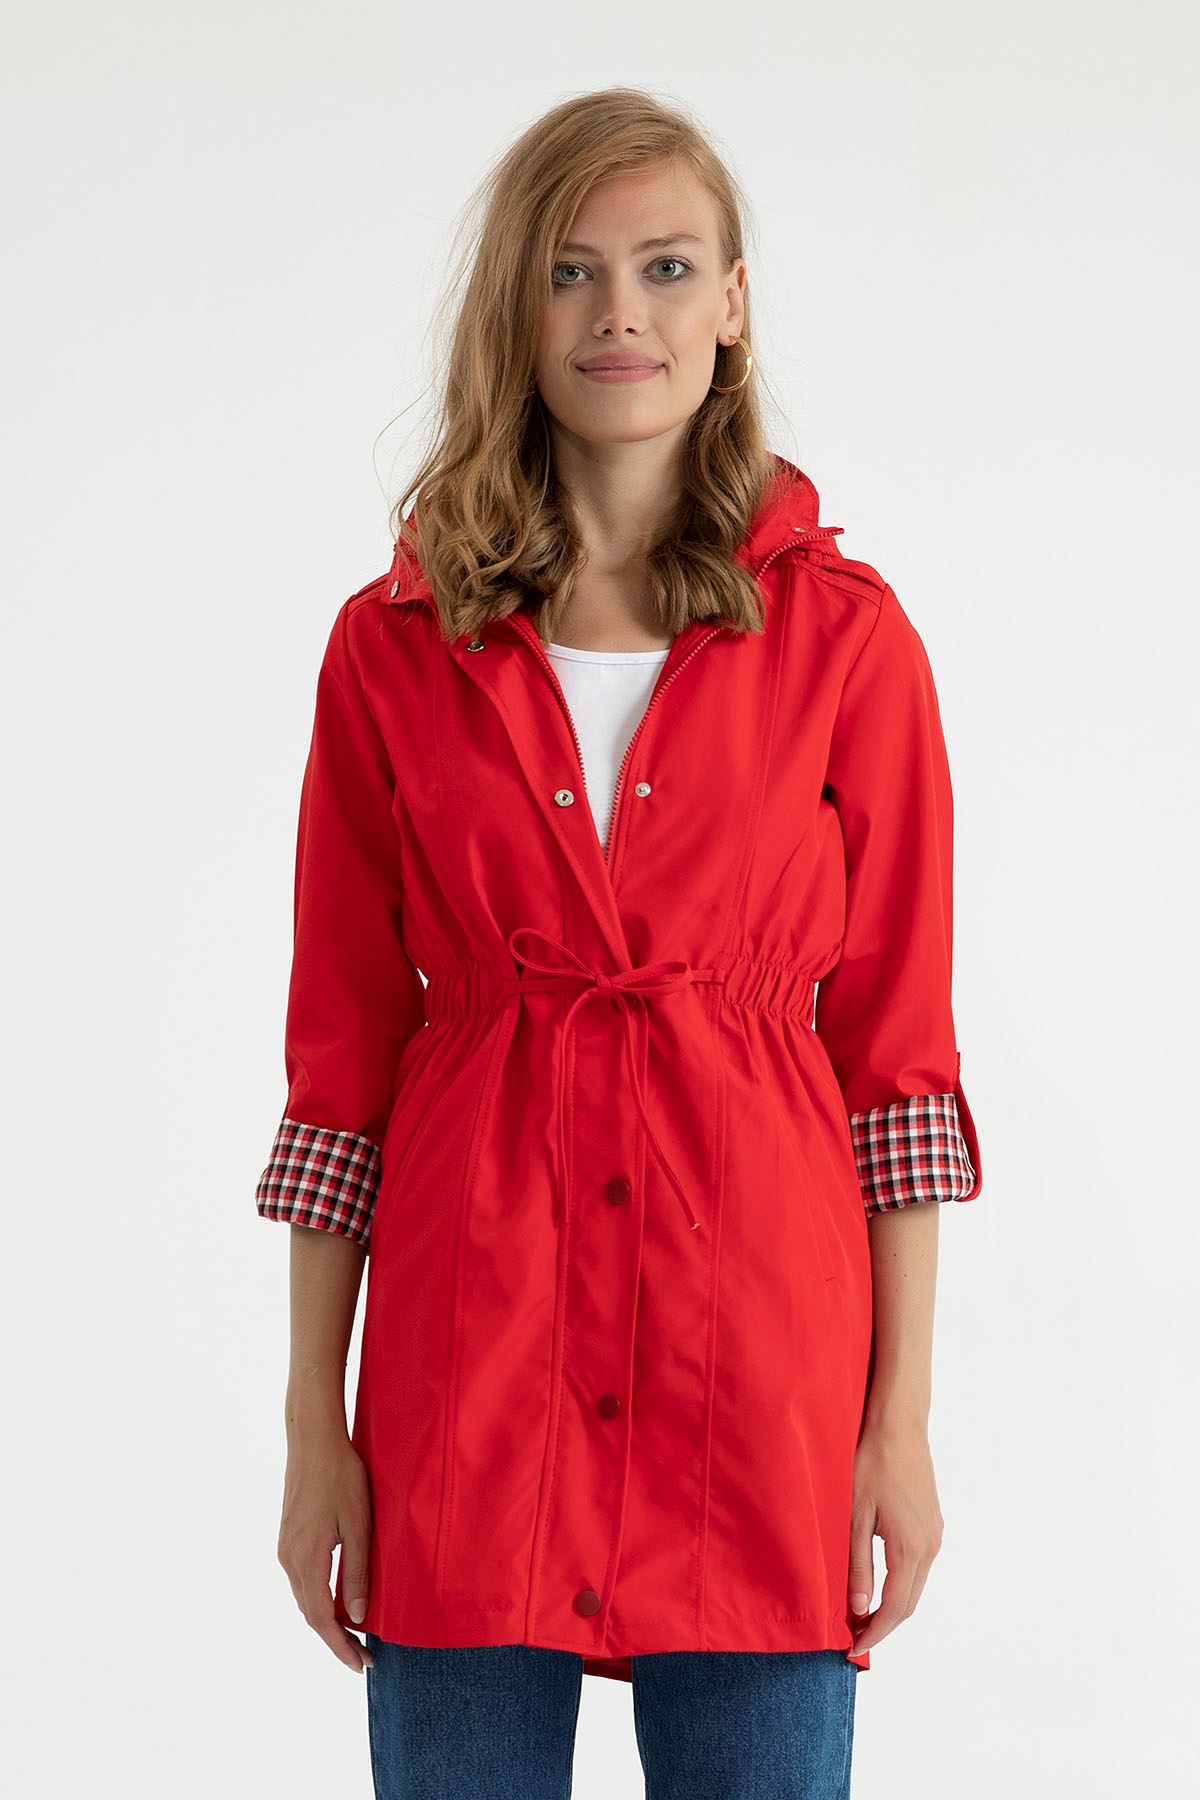 Woven Fabric Zip Neck Below The Hips Women Raincoat - Red